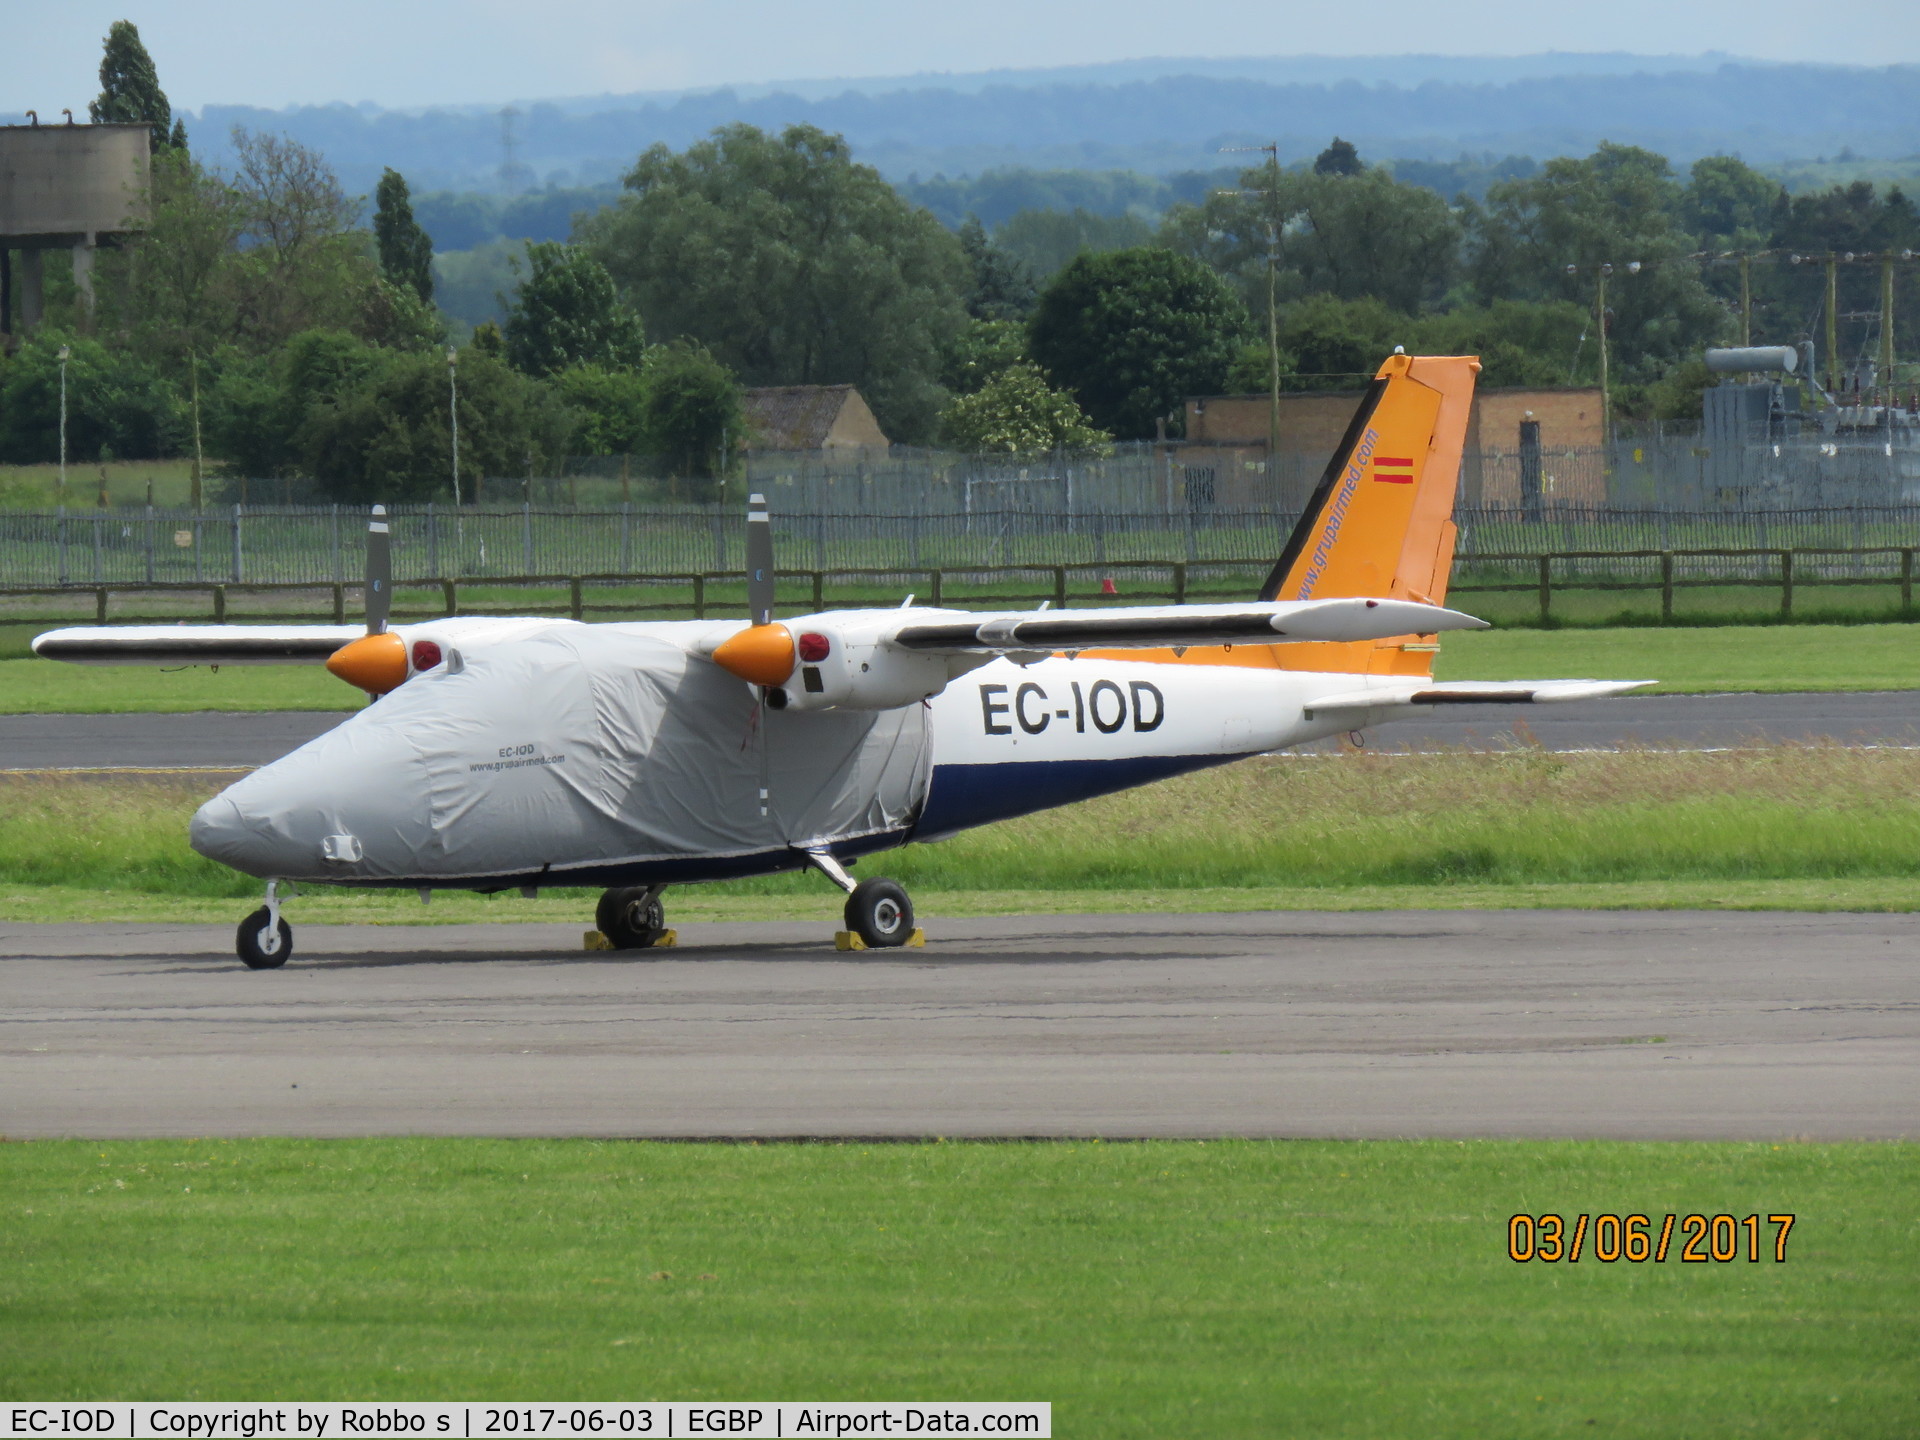 EC-IOD, 1980 Partenavia P-68C C/N 229, EC-IOD P68 seen at Kemble Cotswold Airport.